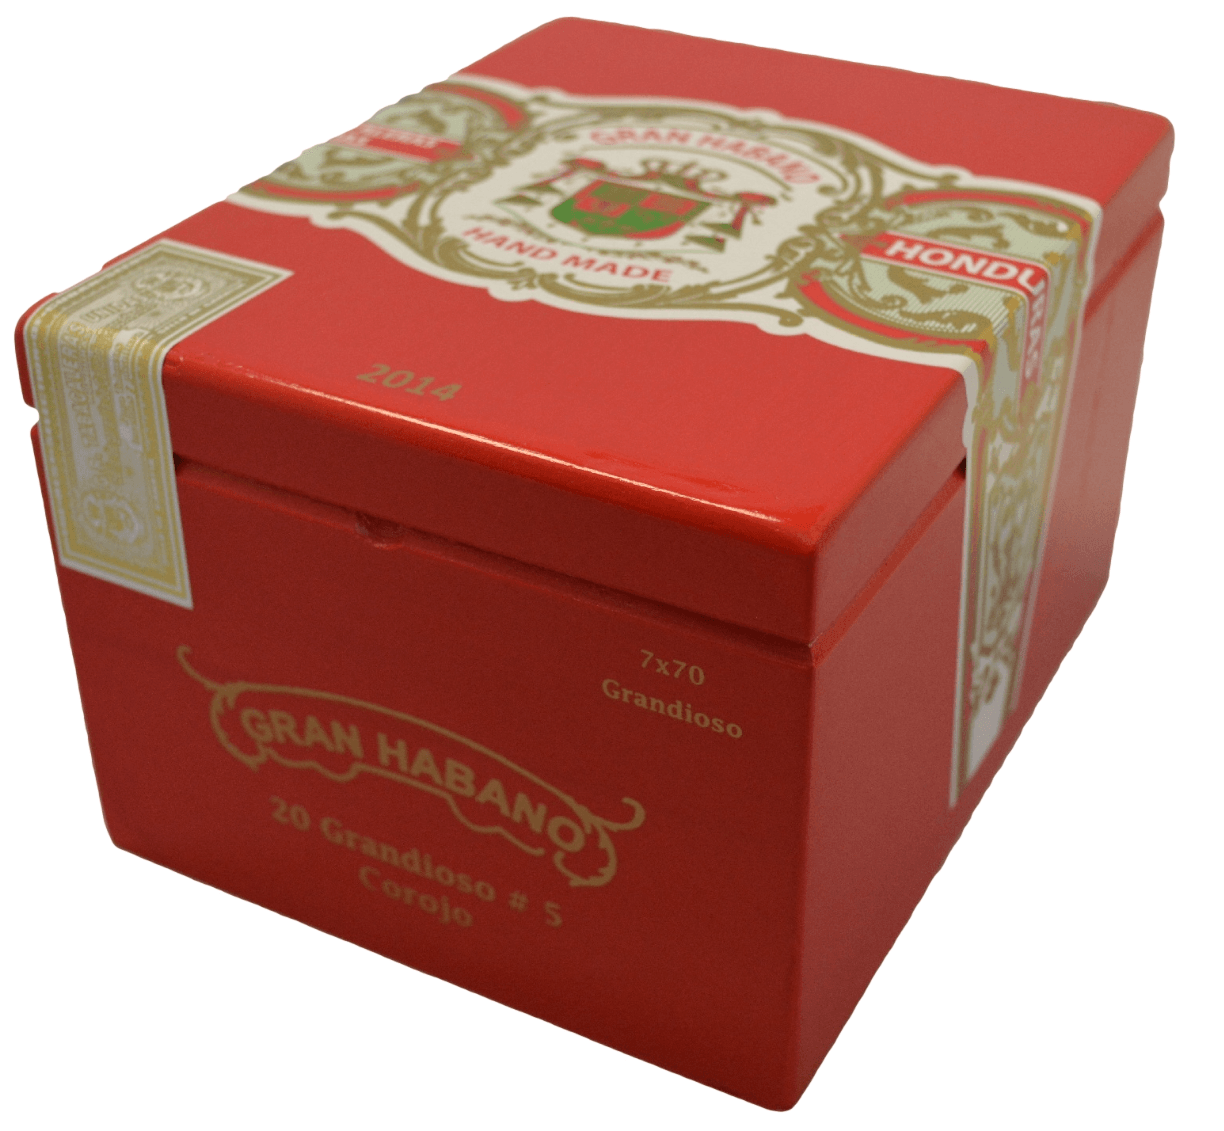 Gran Habano Corojo 5 Grandioso closed box